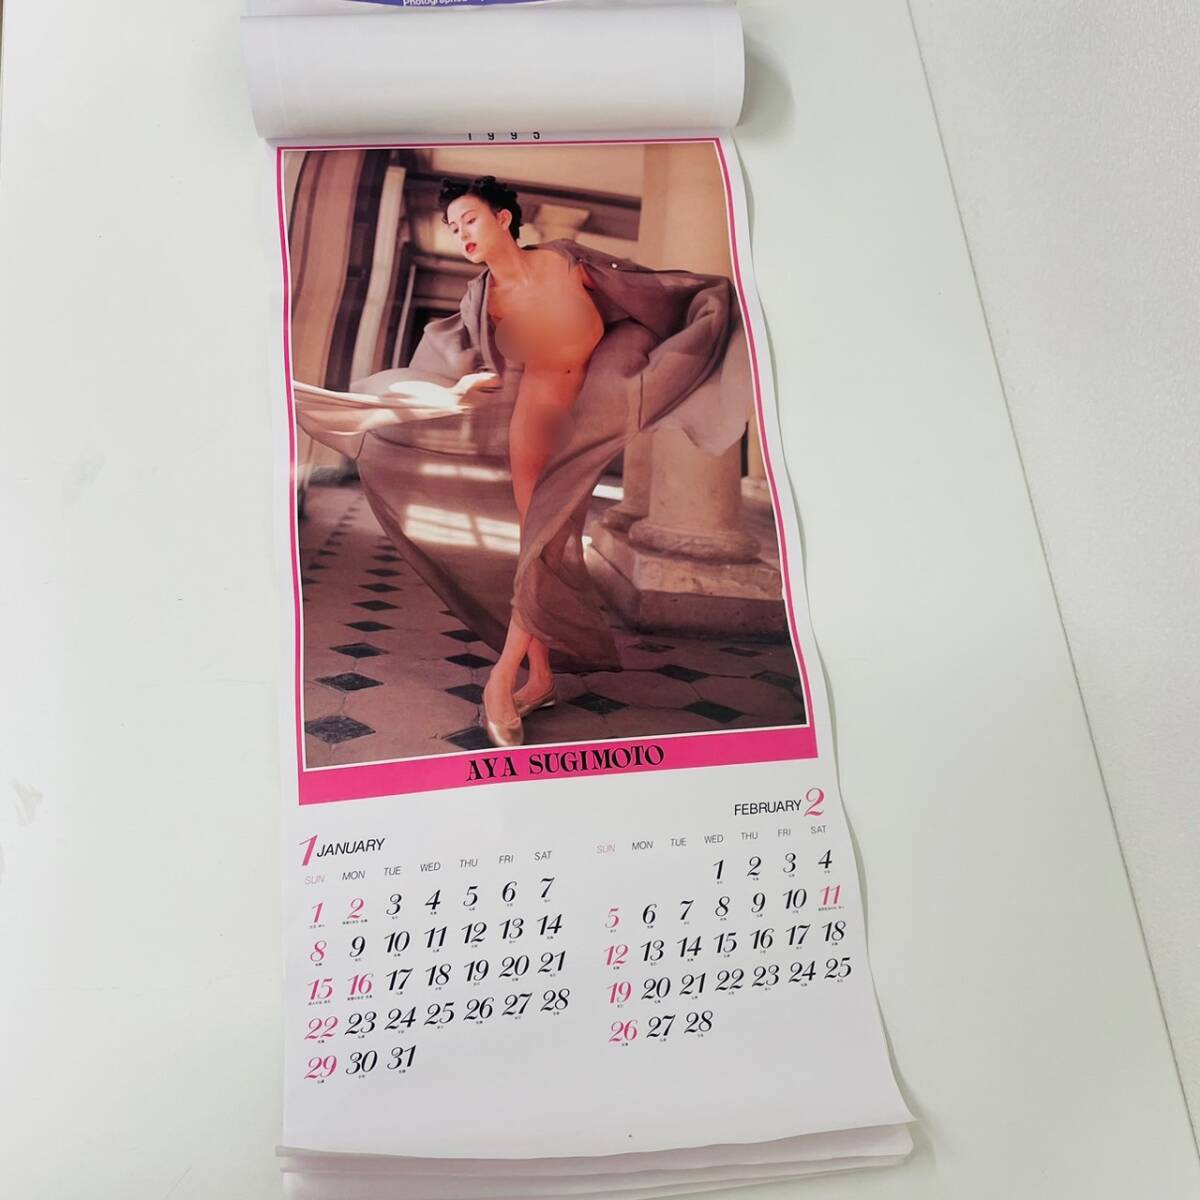 AYA SUGIMOTO Sugimoto Aya календарь 1995 не использовался хранение товар фотография большой размер календарь [0418-C]